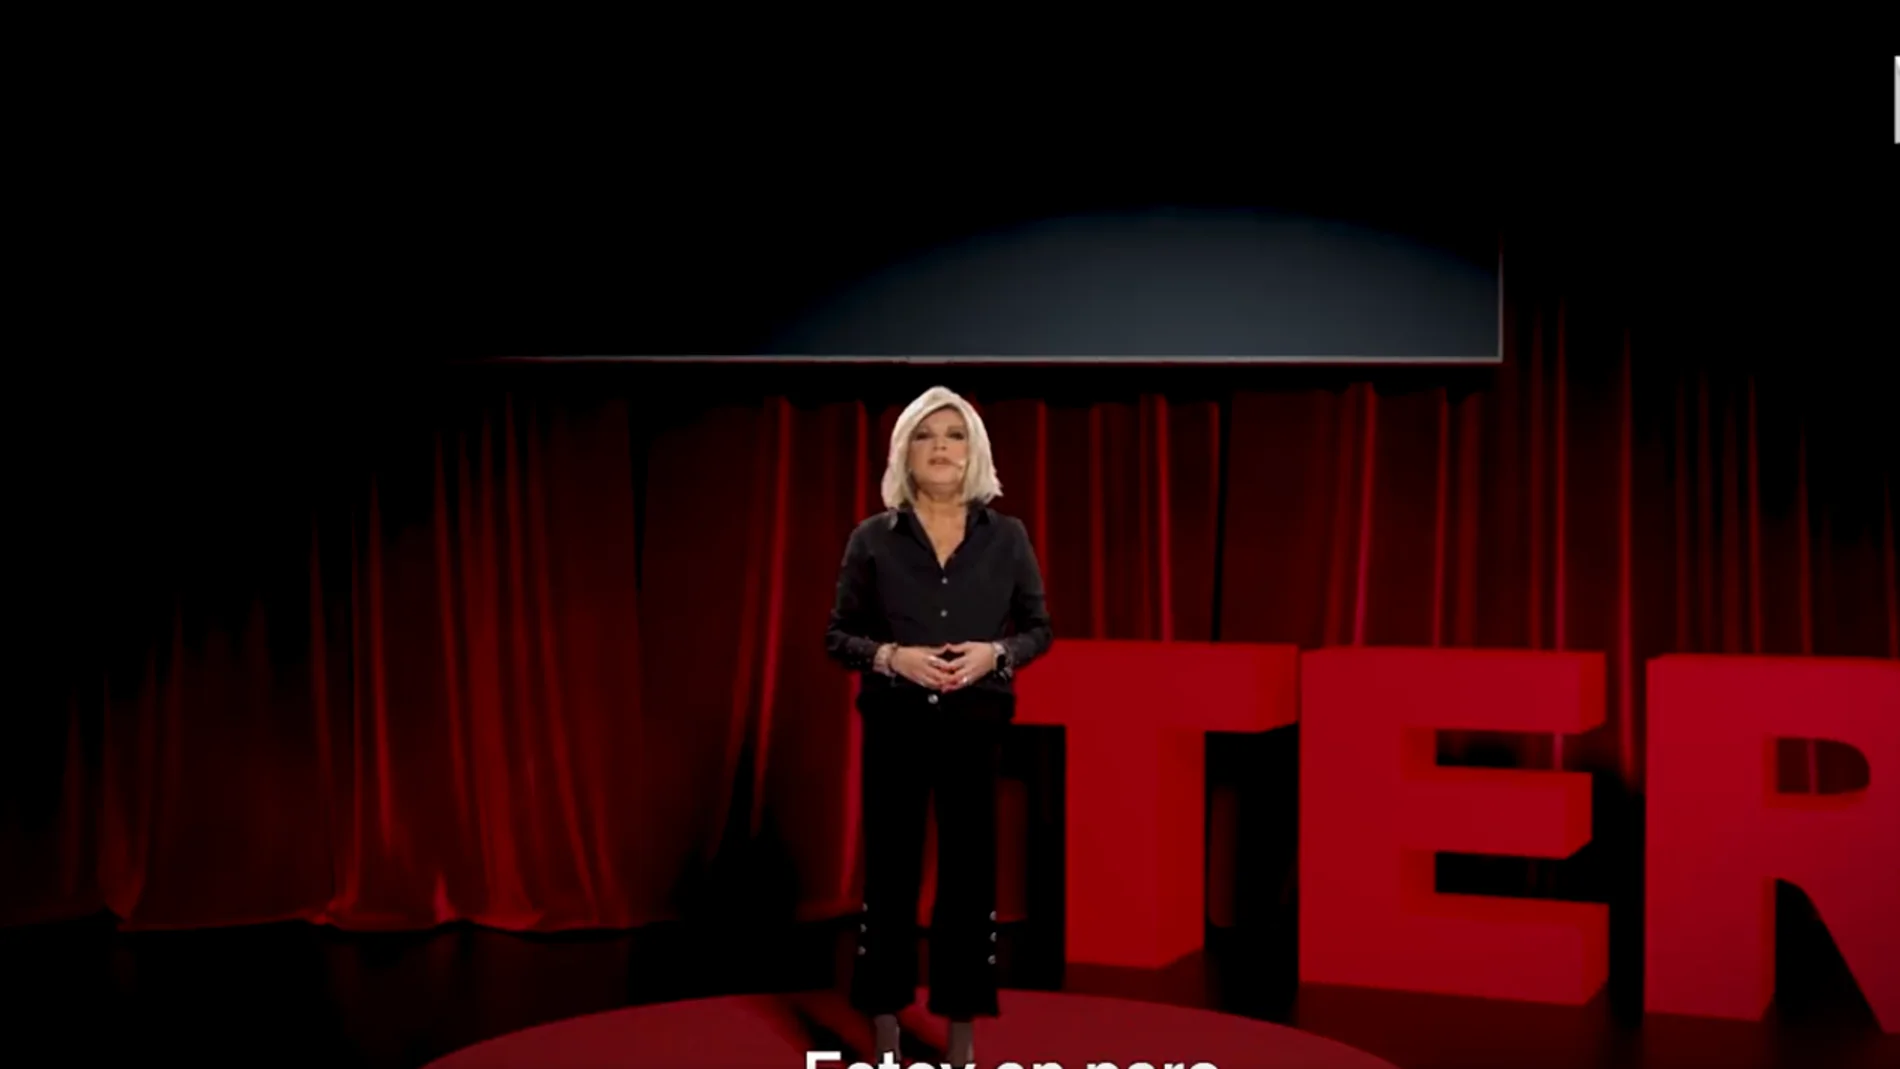 Netflix recurre a una charla 'TER' de Terelu Campos para promocionar 'Sálvese quien pueda'